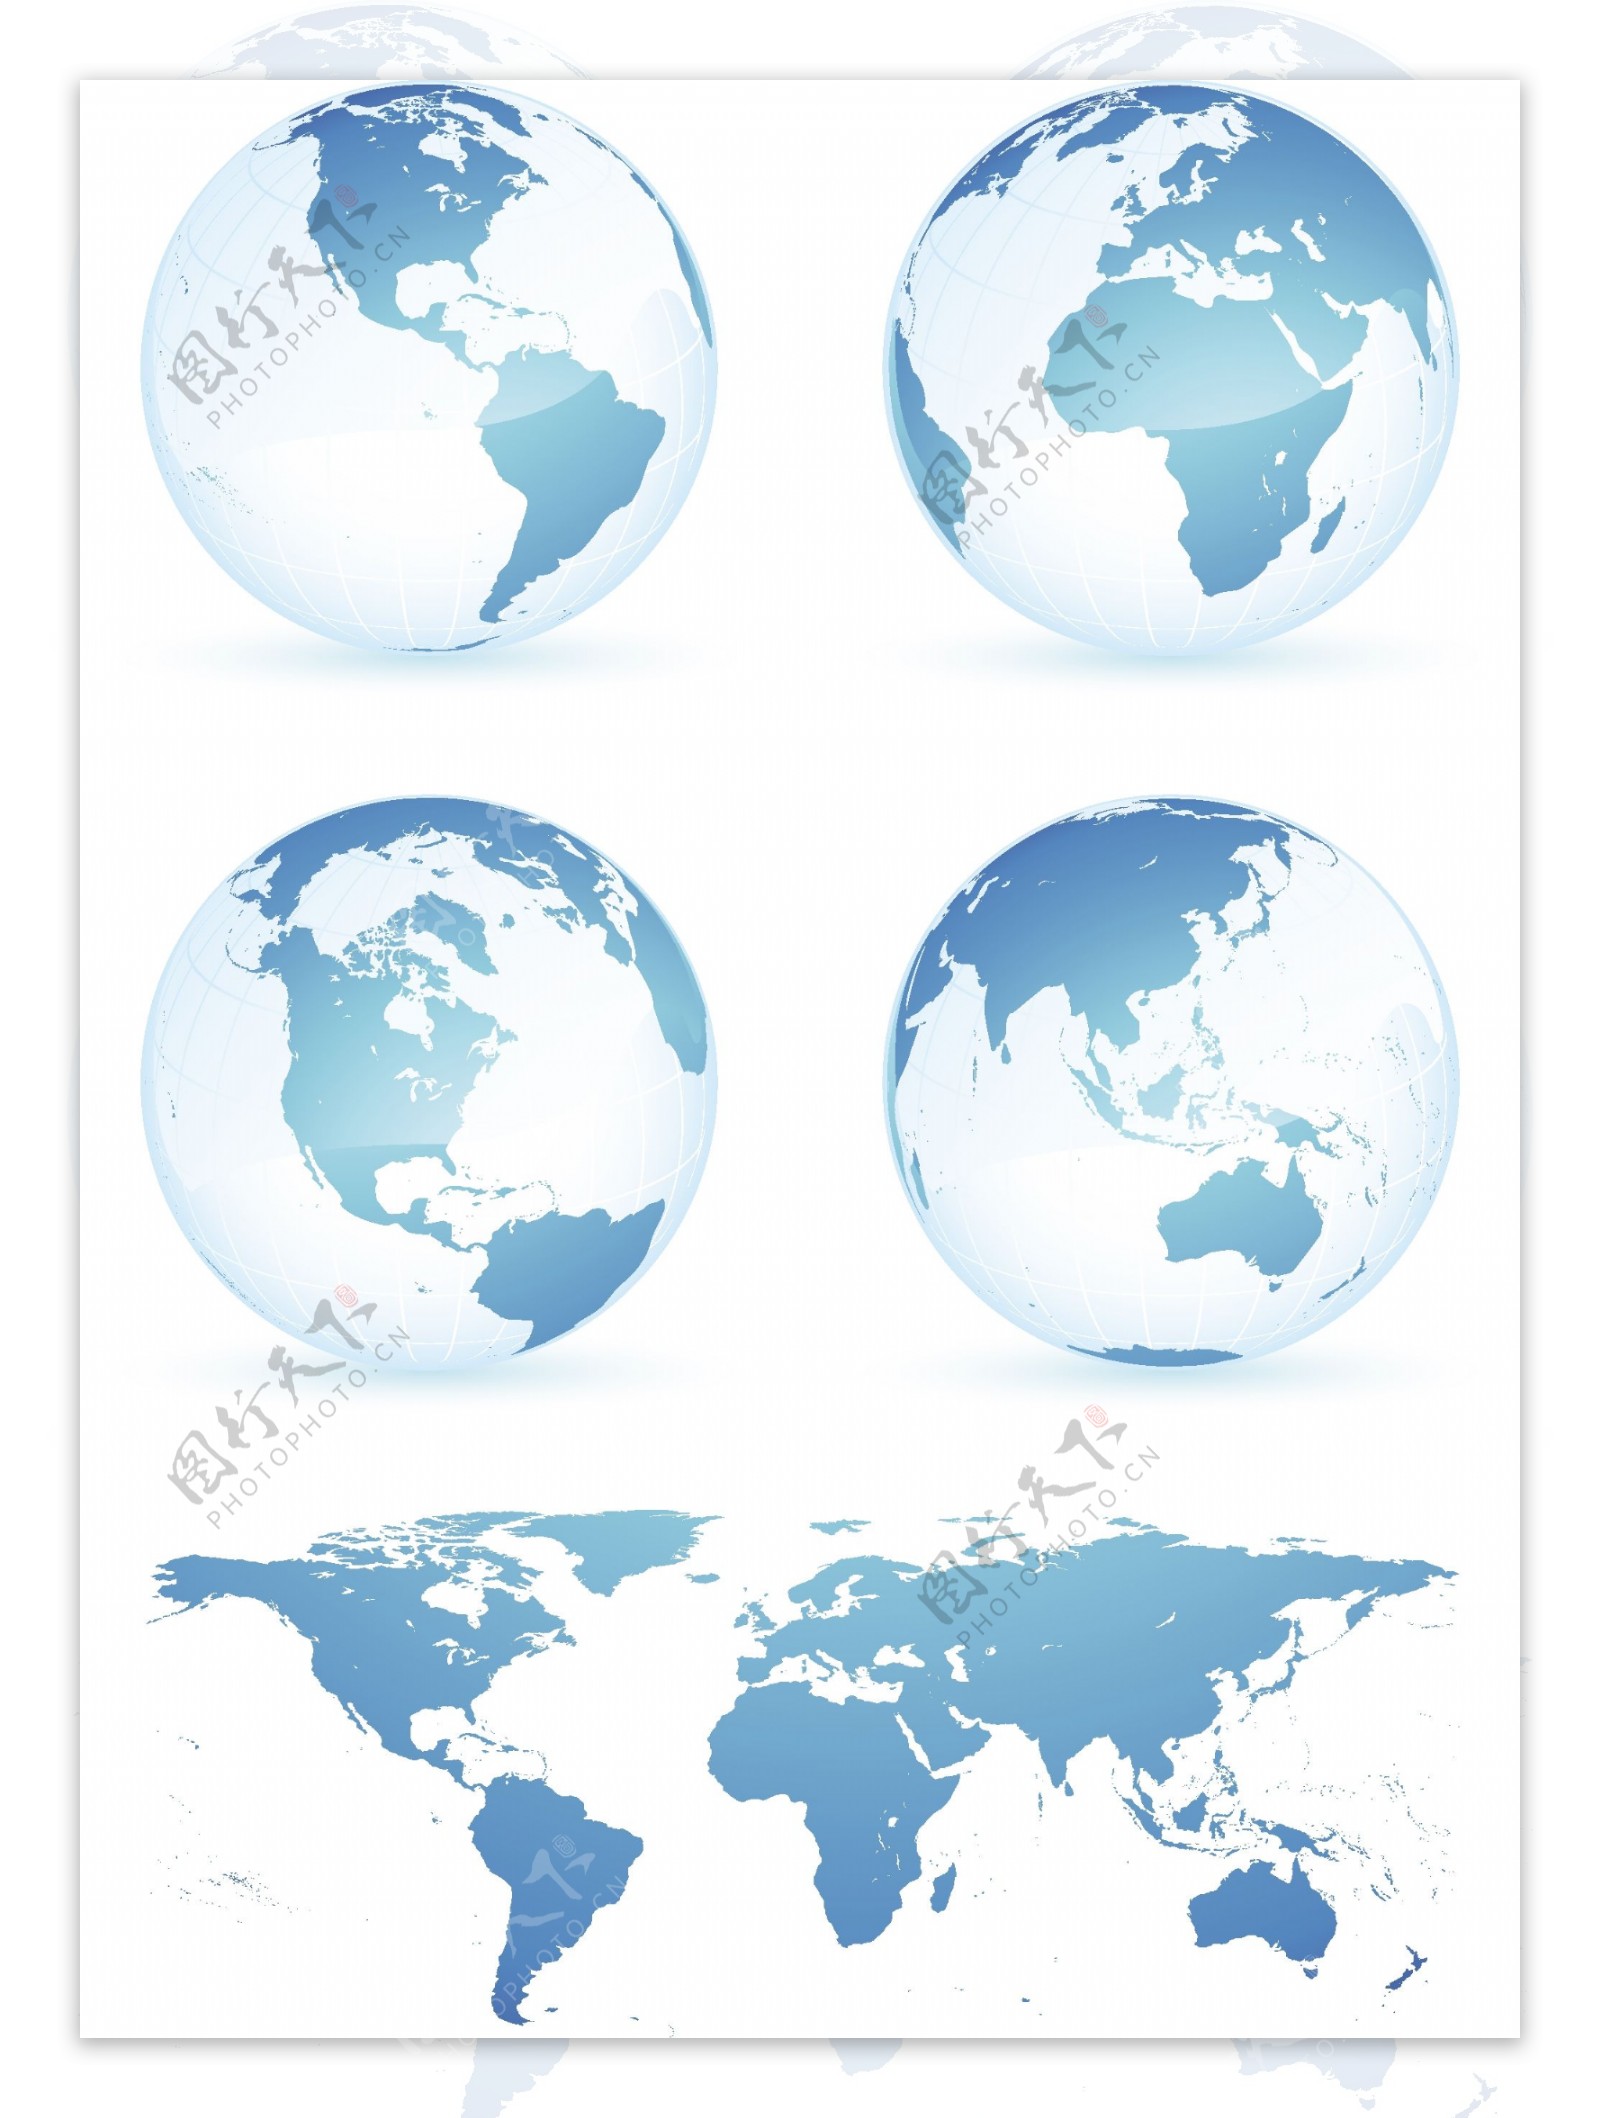 水晶蓝地球世界地图矢量素材